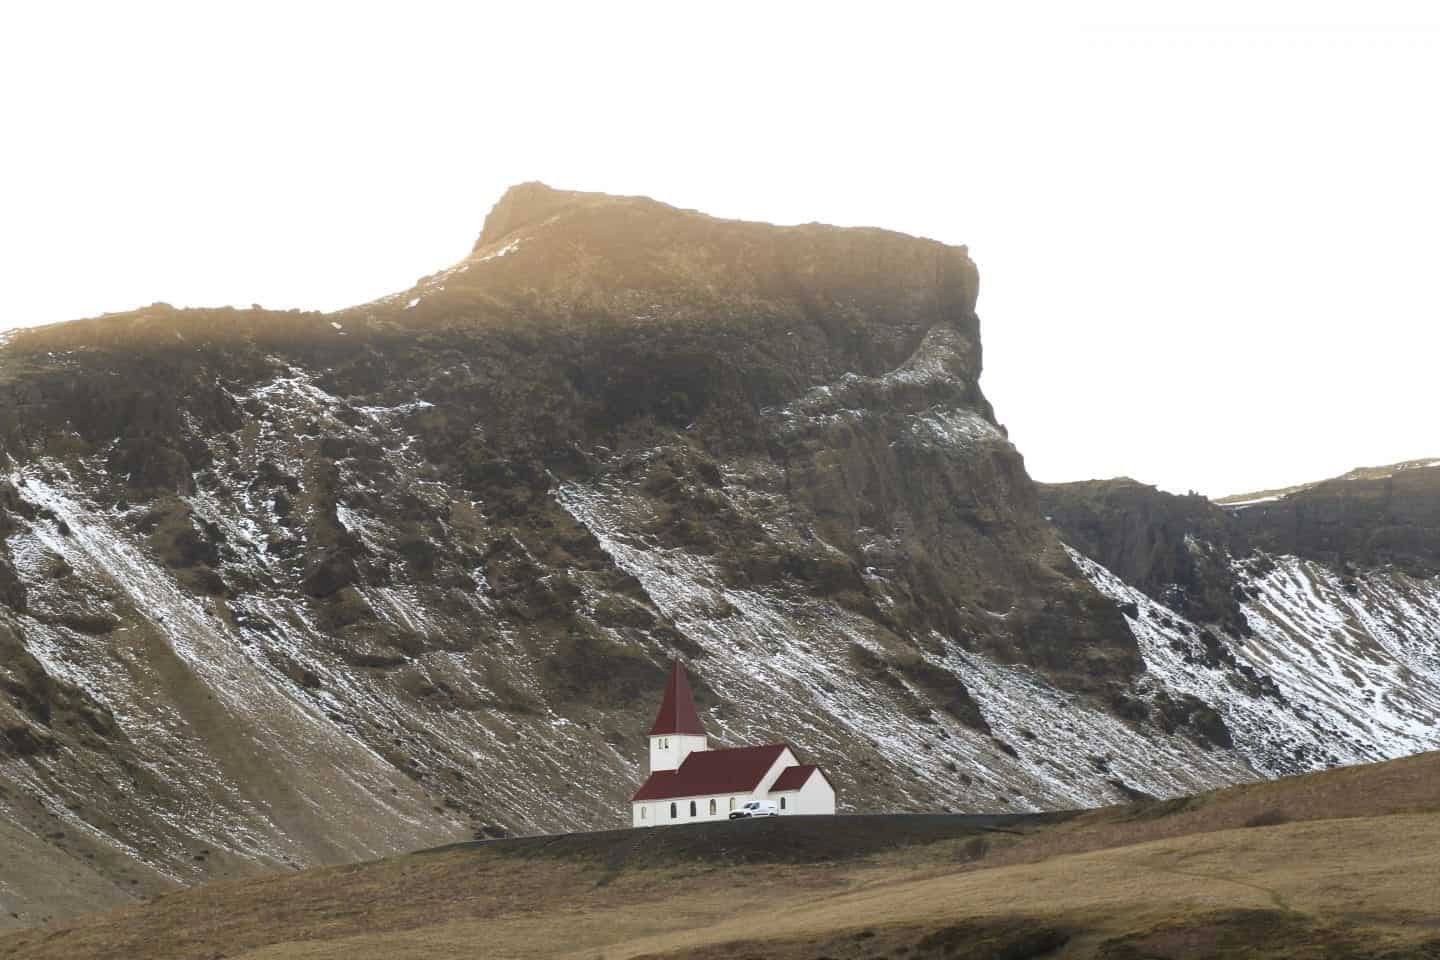 Debe hacer actividades en Vik Islandia, iglesia blanca con techo de tejas rojas sentada en la cima de una colina frente a un gran afloramiento rocoso con algo de nieve a los lados bajo un cielo soleado y brillante